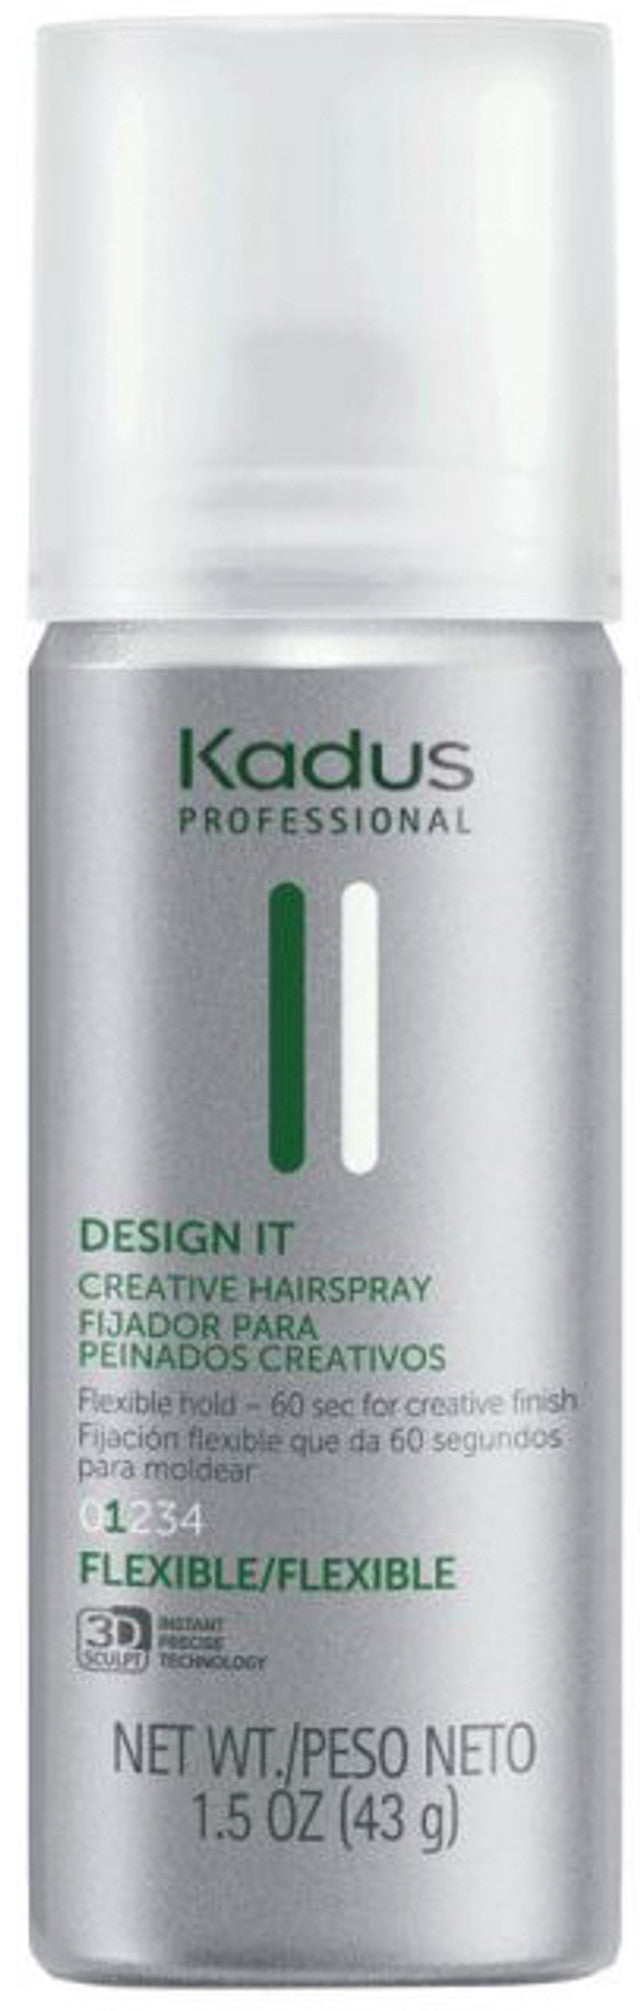 Kadus Design It Hairspray